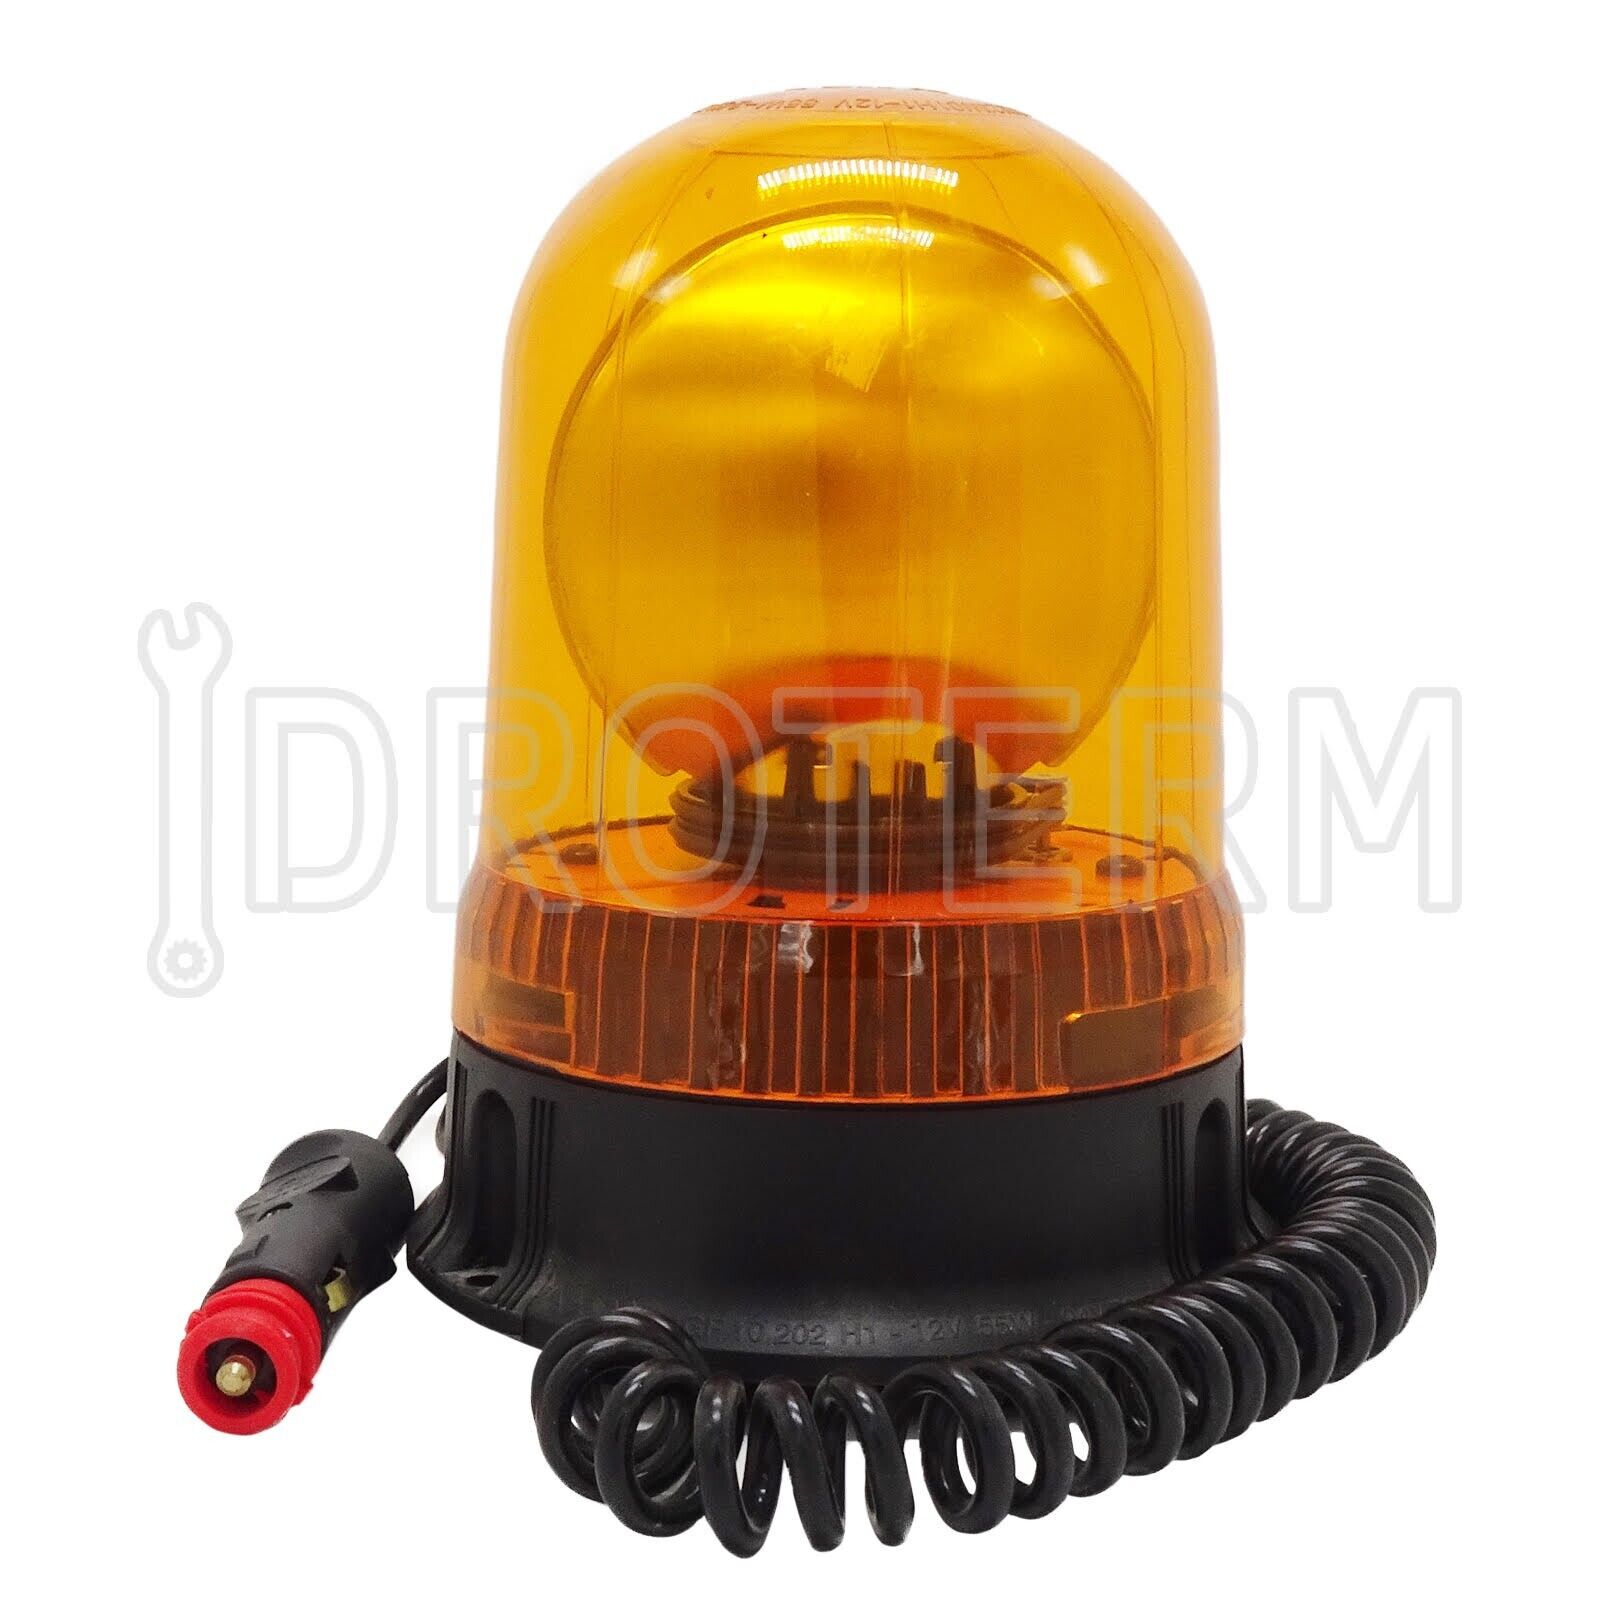 Girofaro lampeggiante a led magnetico per trattore , muletto arancio 12 -24v